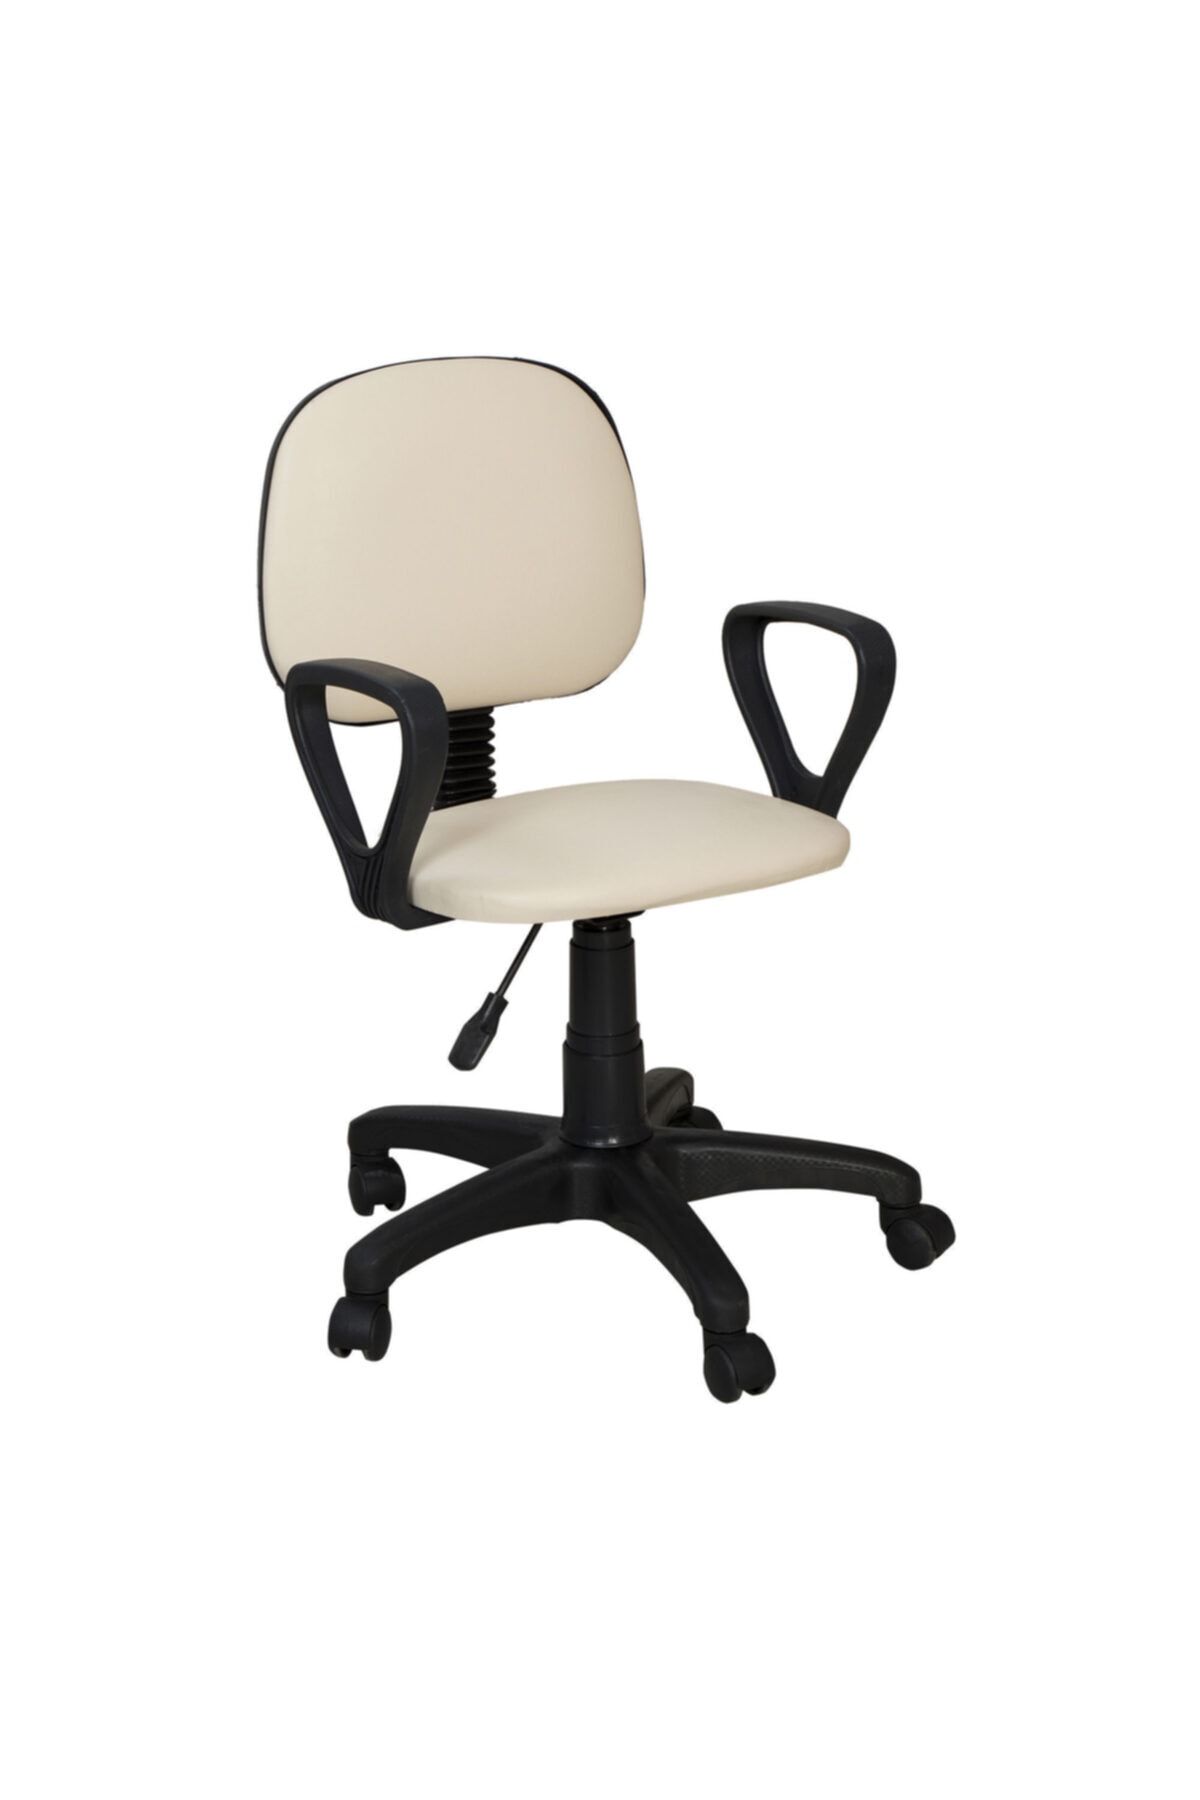 TOMAR Cgn Kollu Çalışma Sandalyesi Ofis Sandalyesi Öğrenci Koltuğu Ofis Ve Büro Sandalyesi - Krem